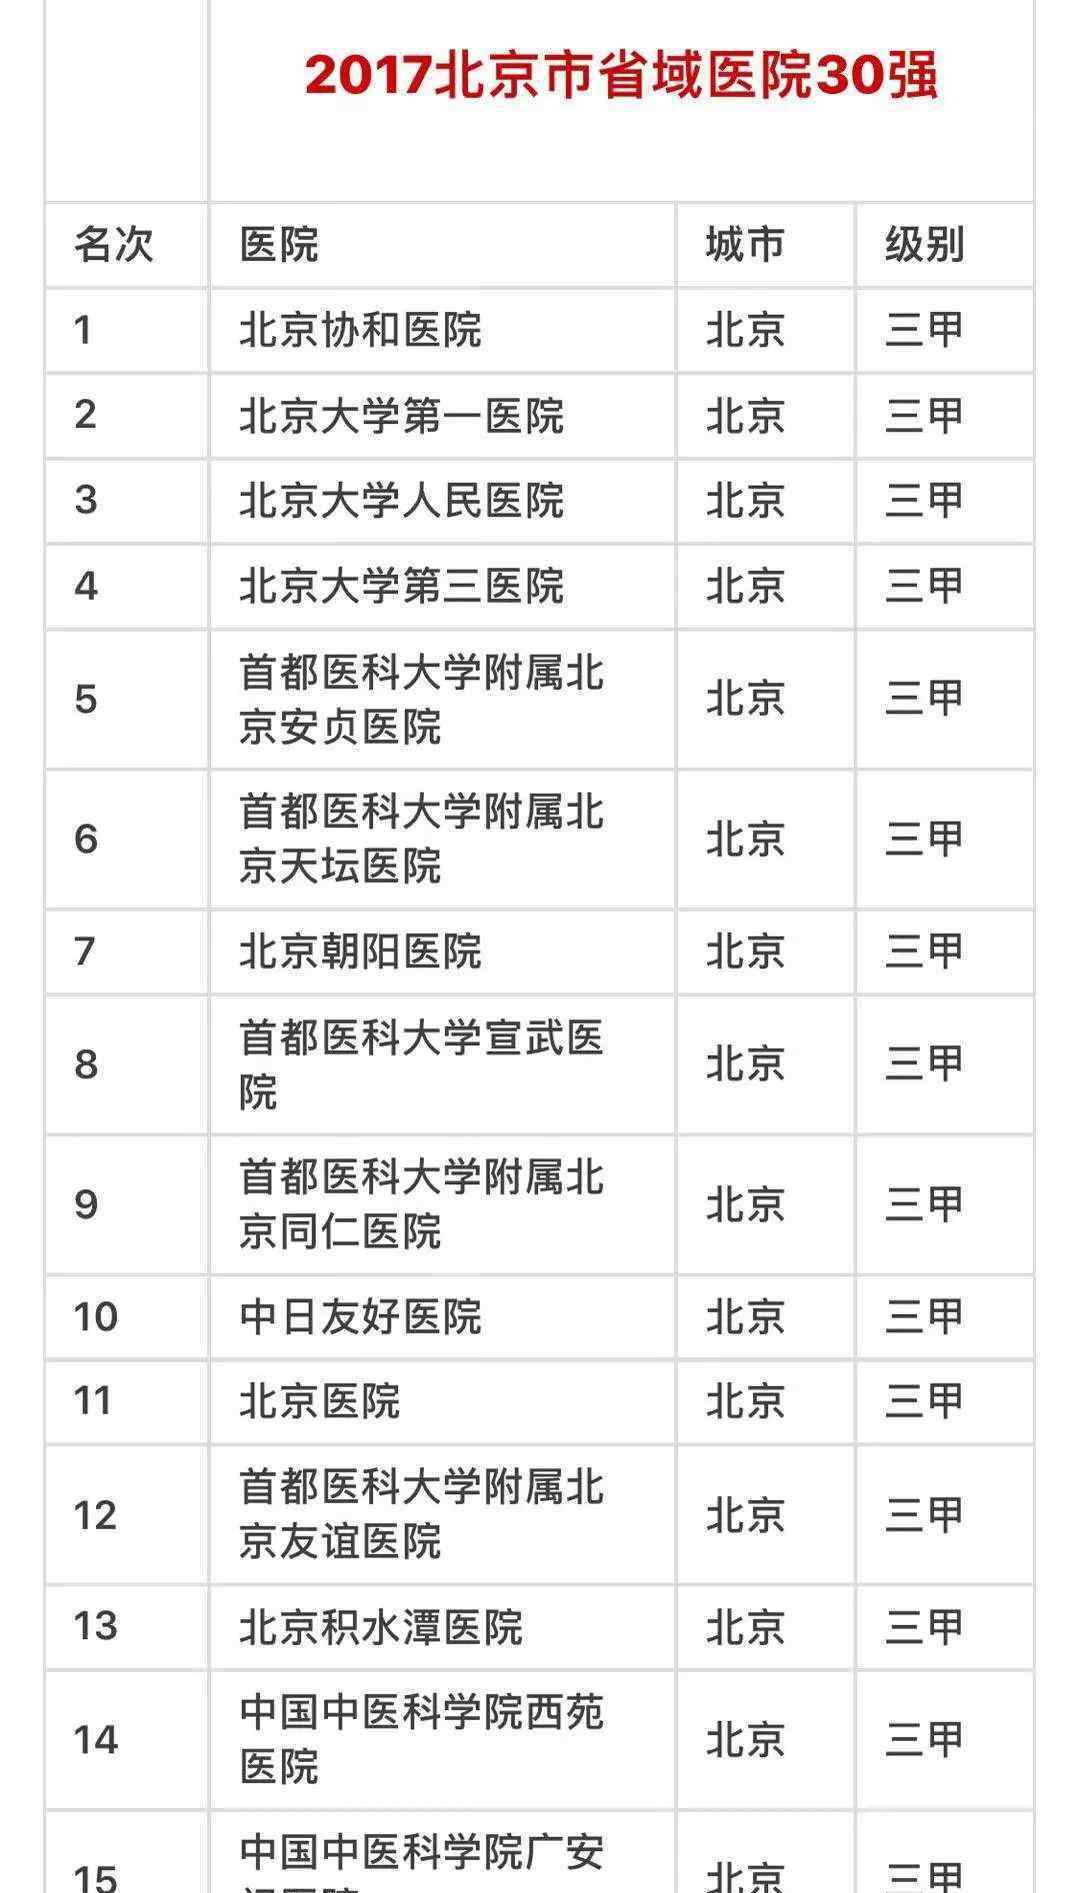 2017中国医院竞争能力排名榜北京市30家医院门诊取得成功